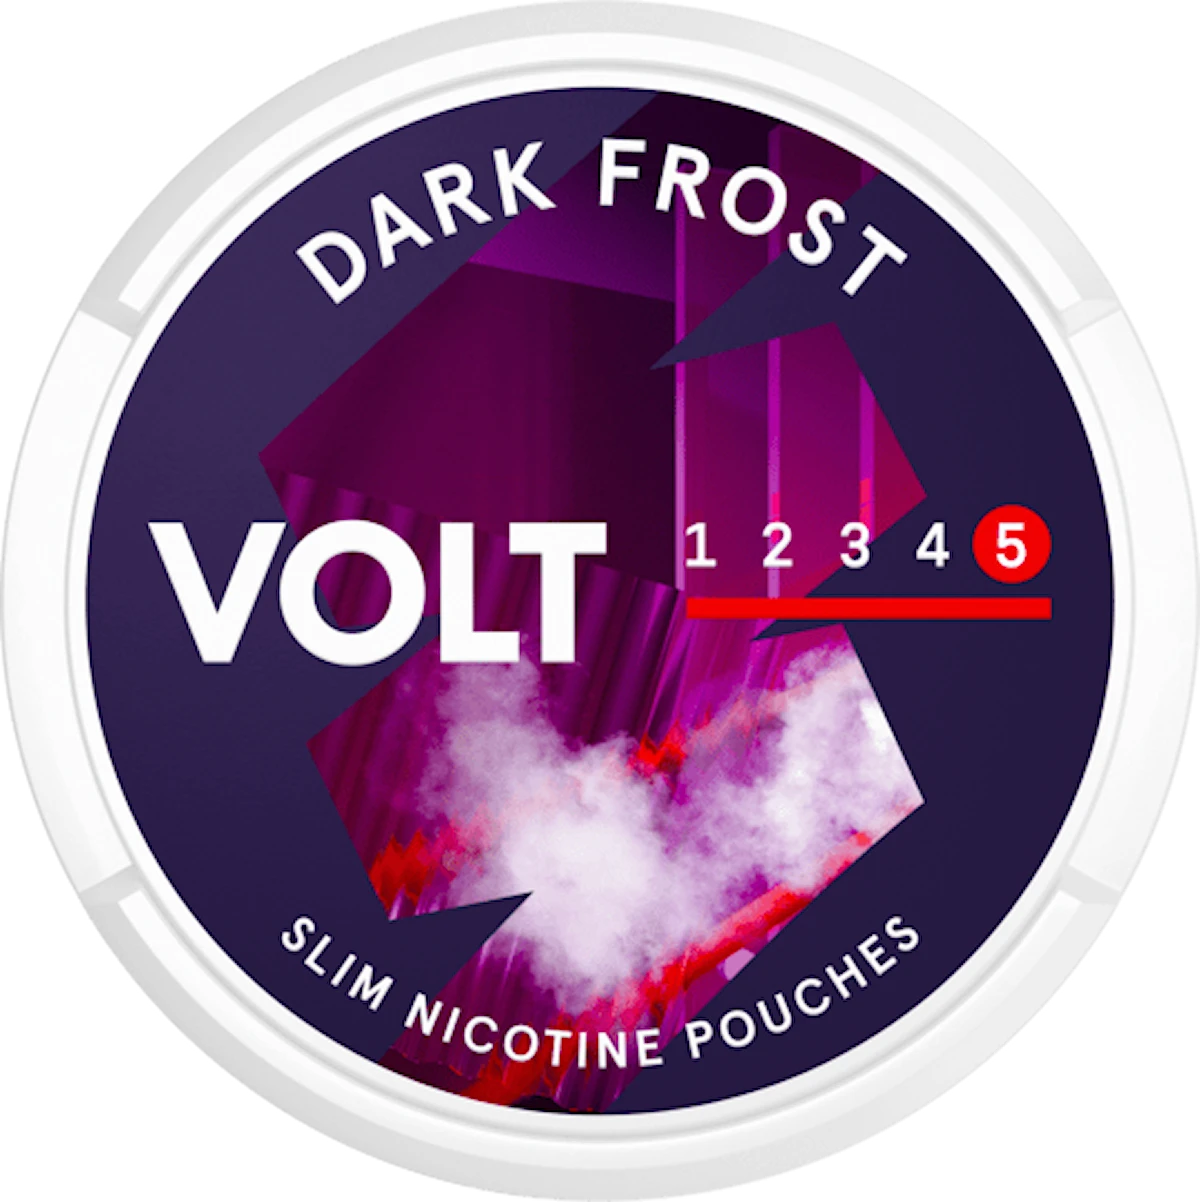 VOLT Dark Frost Slim Super Strong